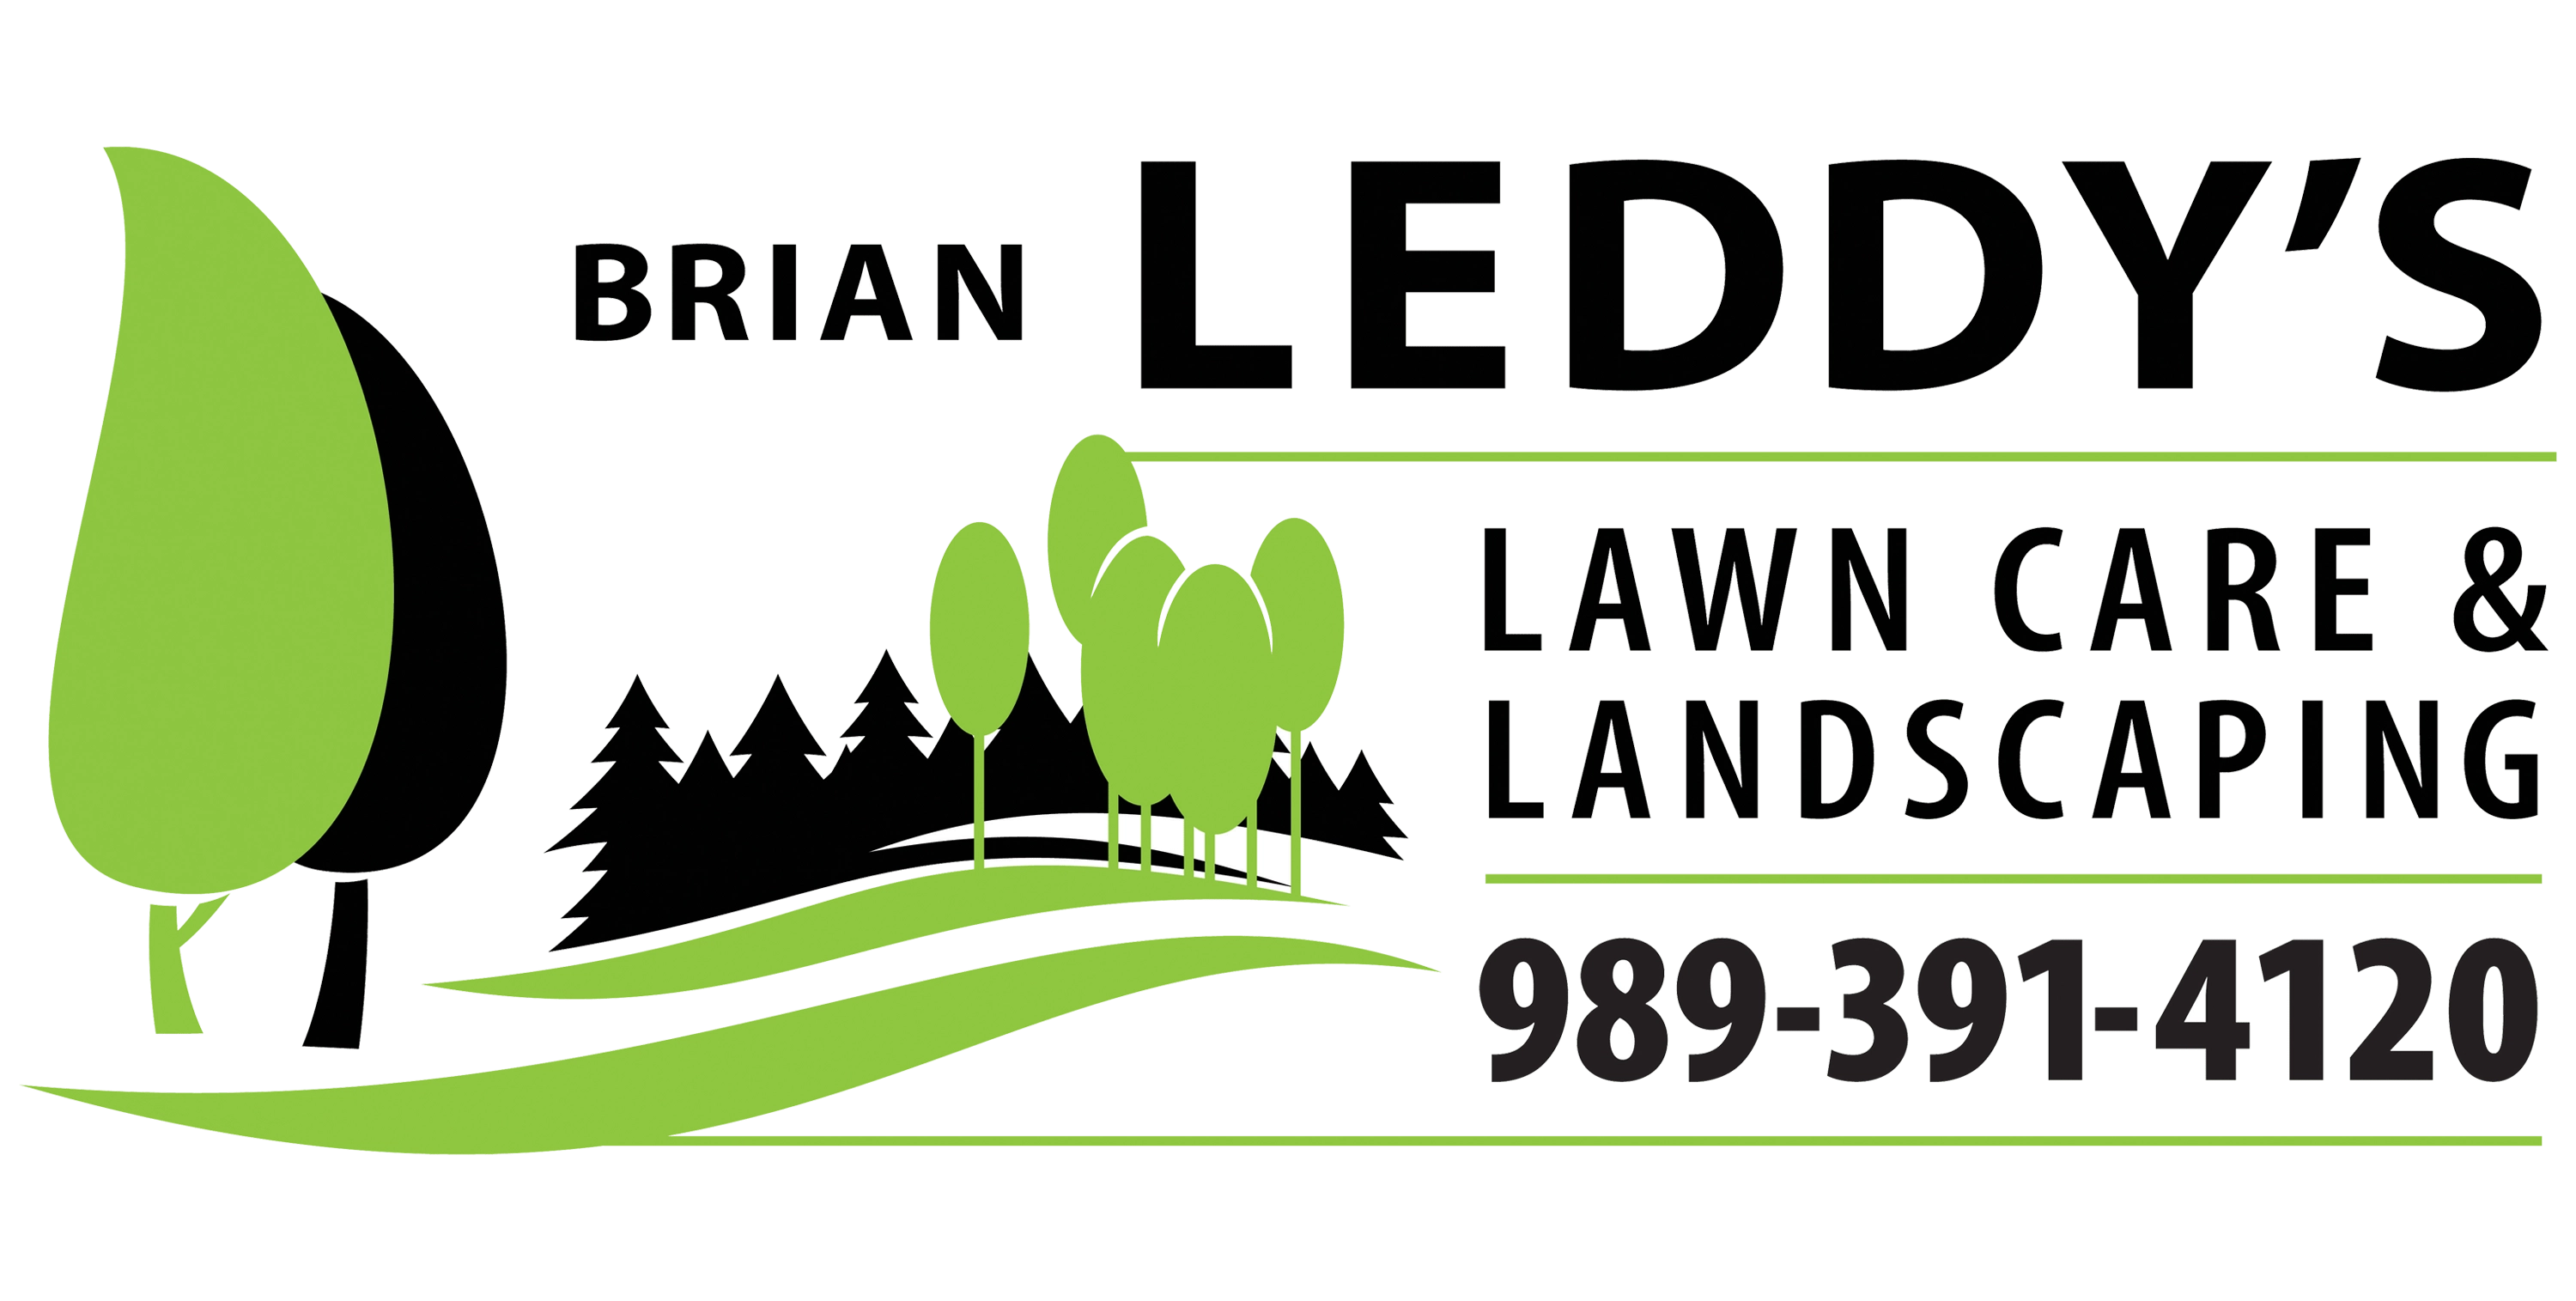 Brian Leddy's Lawn Care & Landscaping LLC Logo